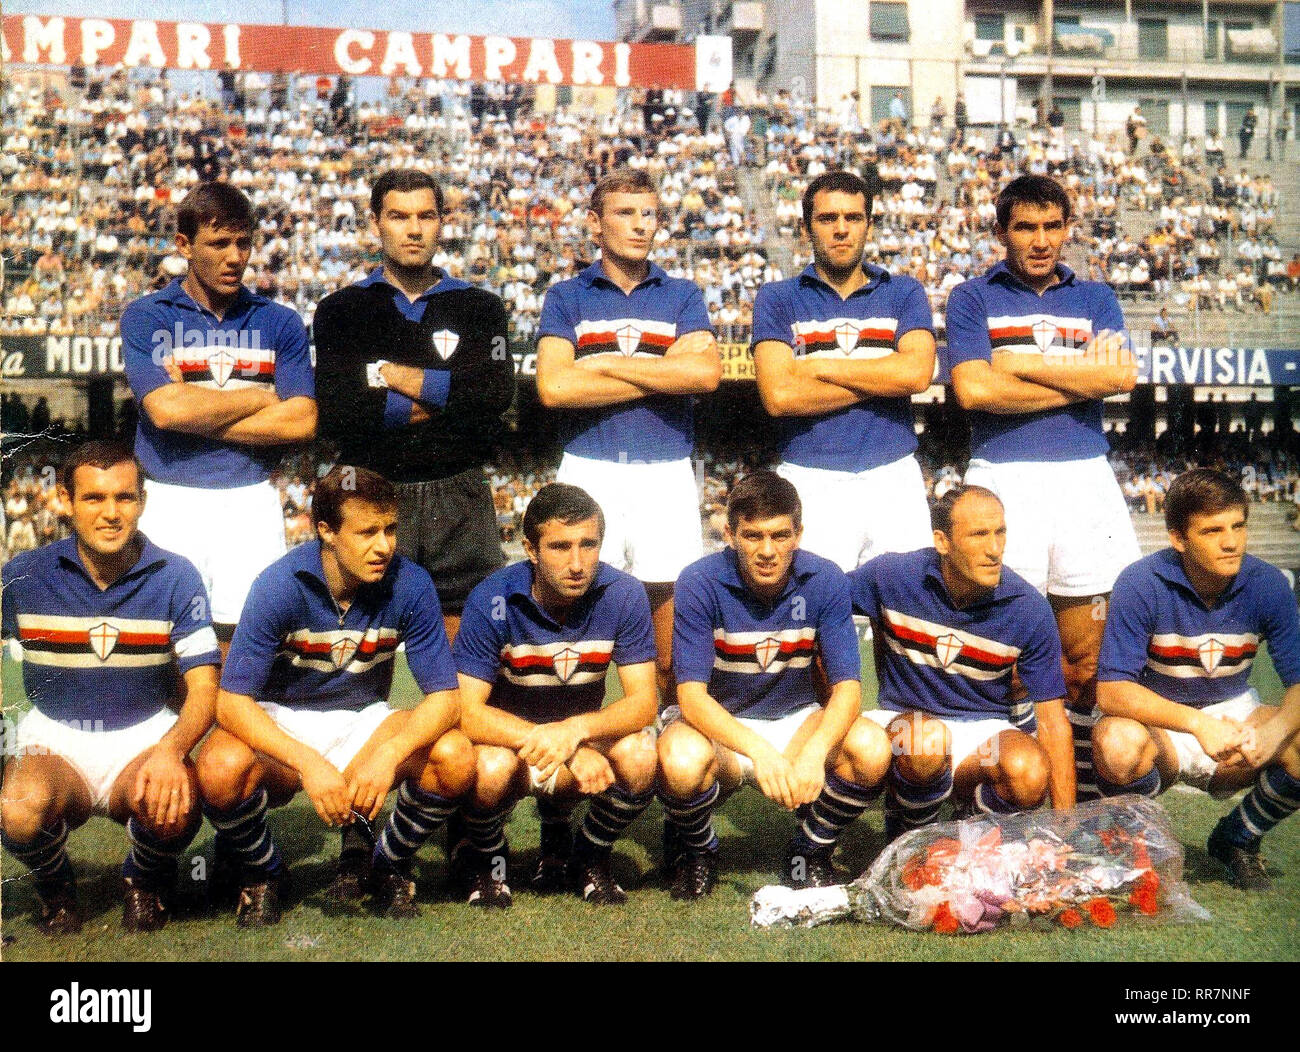 Una foto di gruppo della Sampdoria nella stagione 1966-67, ponendo all'interno del Luigi Ferraris stadium di Genova; riconosciamo Francesco Morini (in piedi nel centro) e il capitano Mario Frustalupi (squat, prima da sinistra). Foto Stock